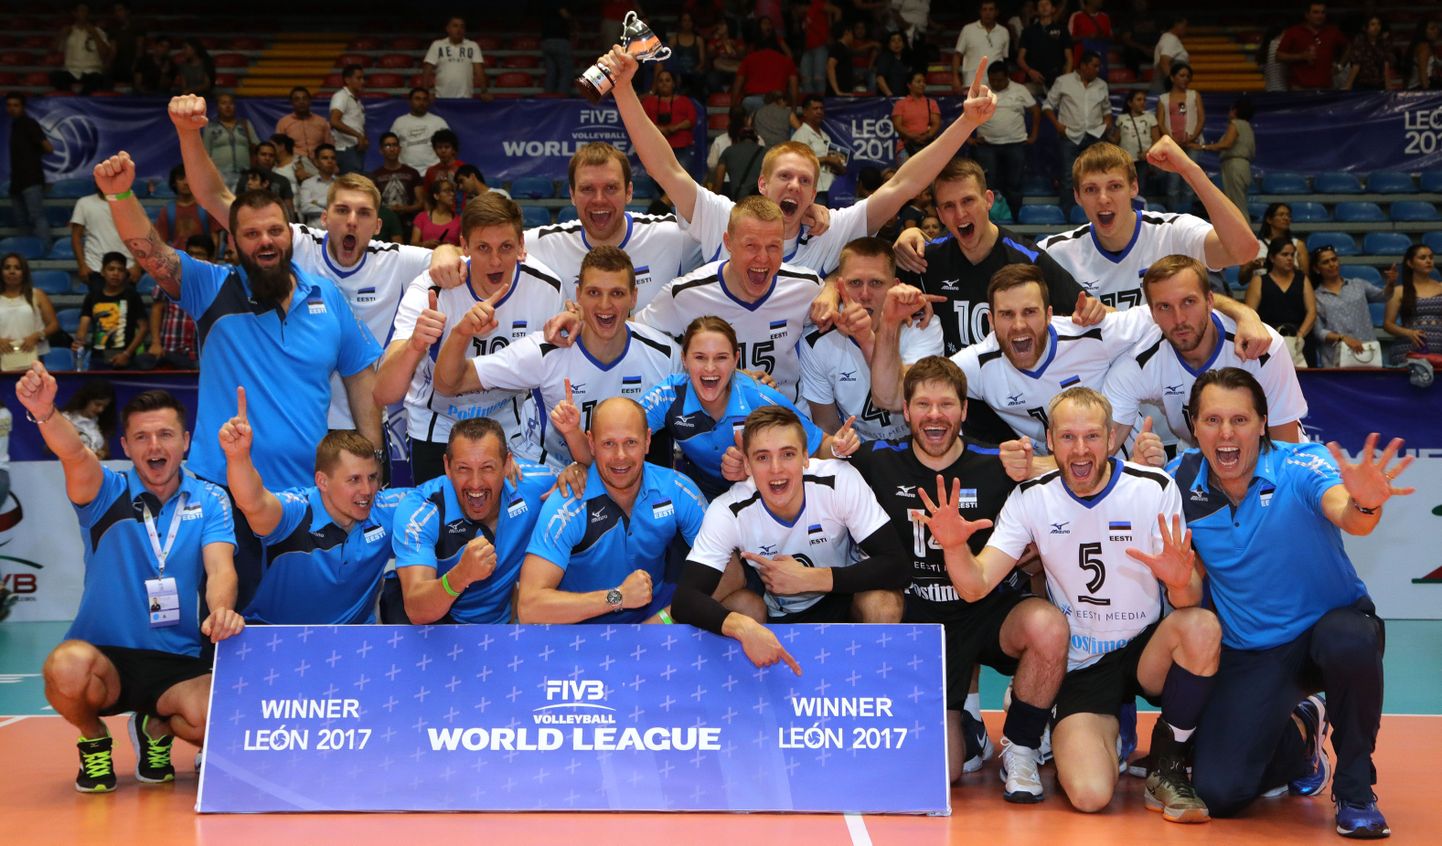 Eesti võrkpallikoondis võidutses tänavu Maailmaliiga kolmandas divisjonis. Järgmisel aastal mängitakse taas Euroopa liigat, aga tase peaks seal olema kõvemgi kui tänavusel turniiril.